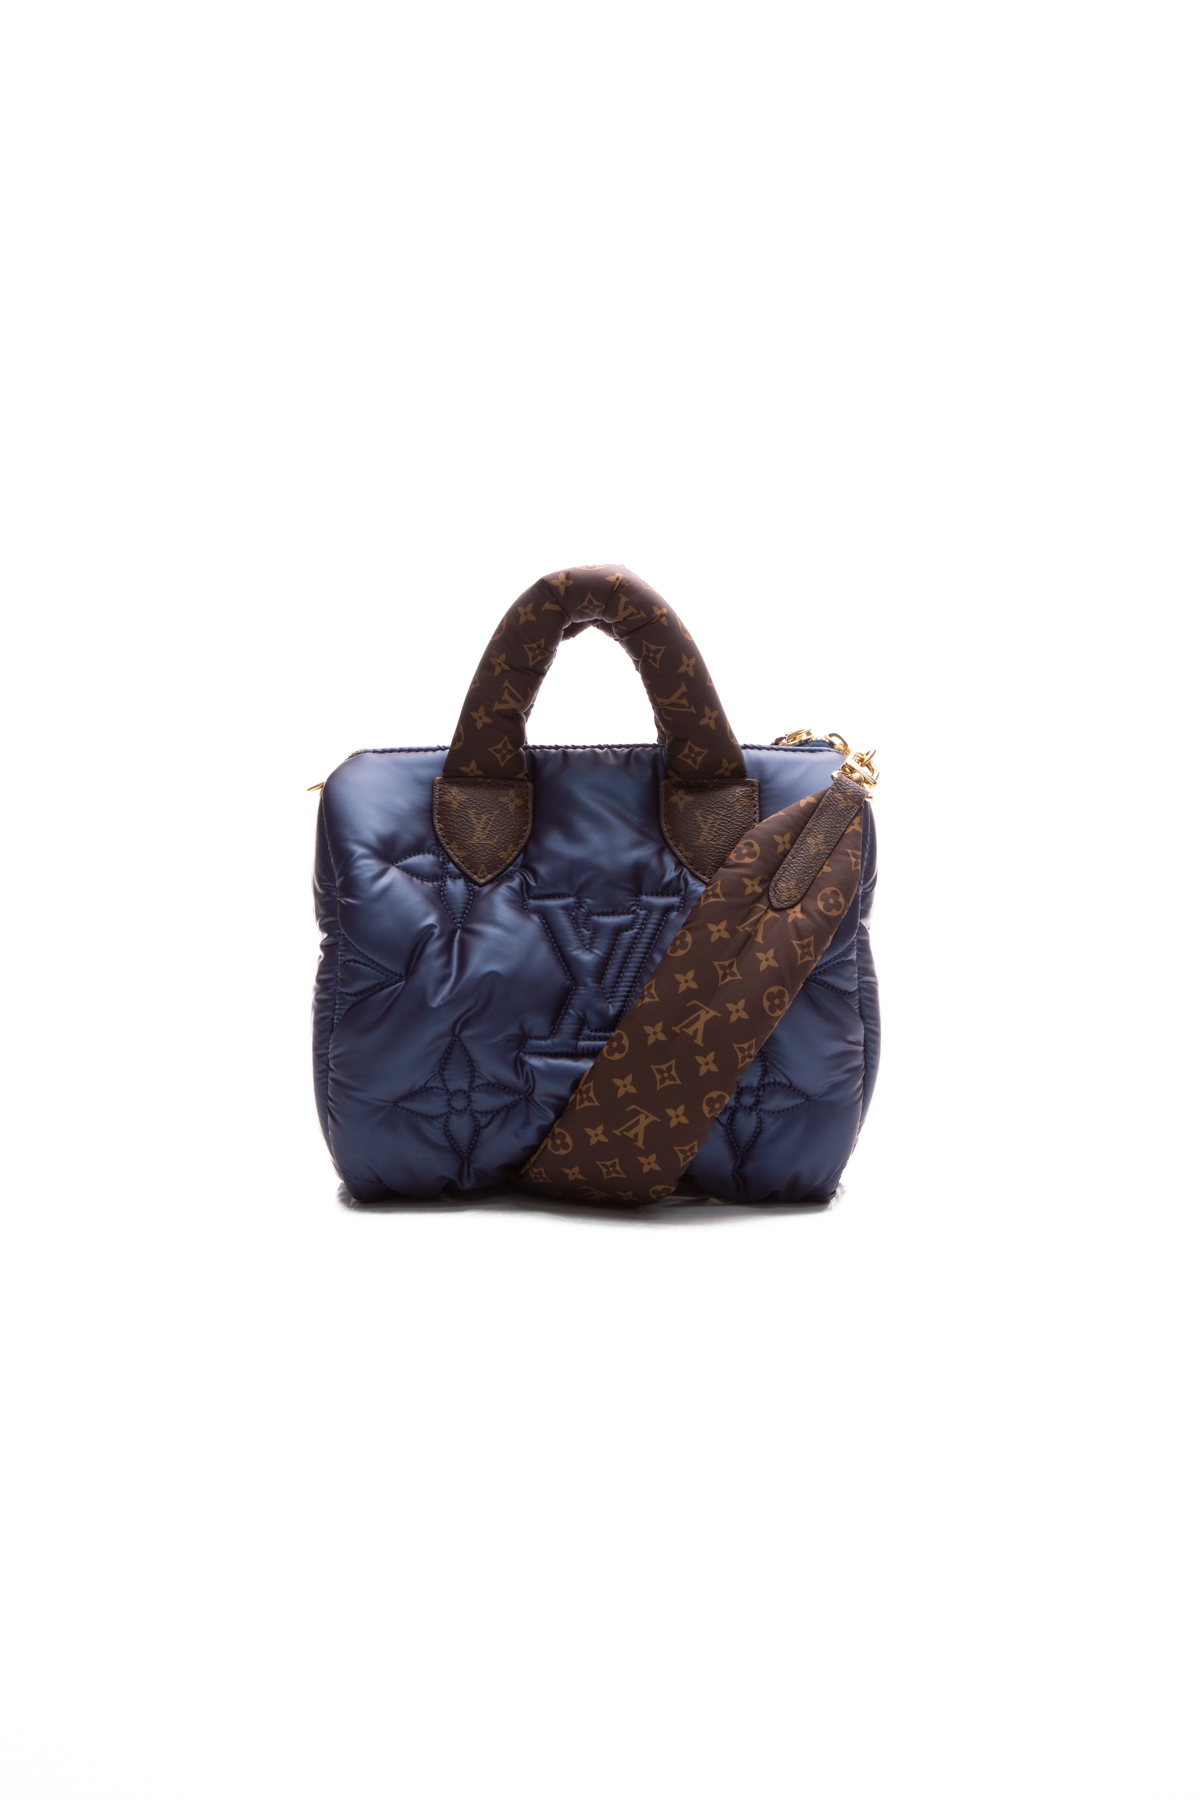 Sac speedy 25 pillow bandoulière en nylon bleu - Louis Vuitton